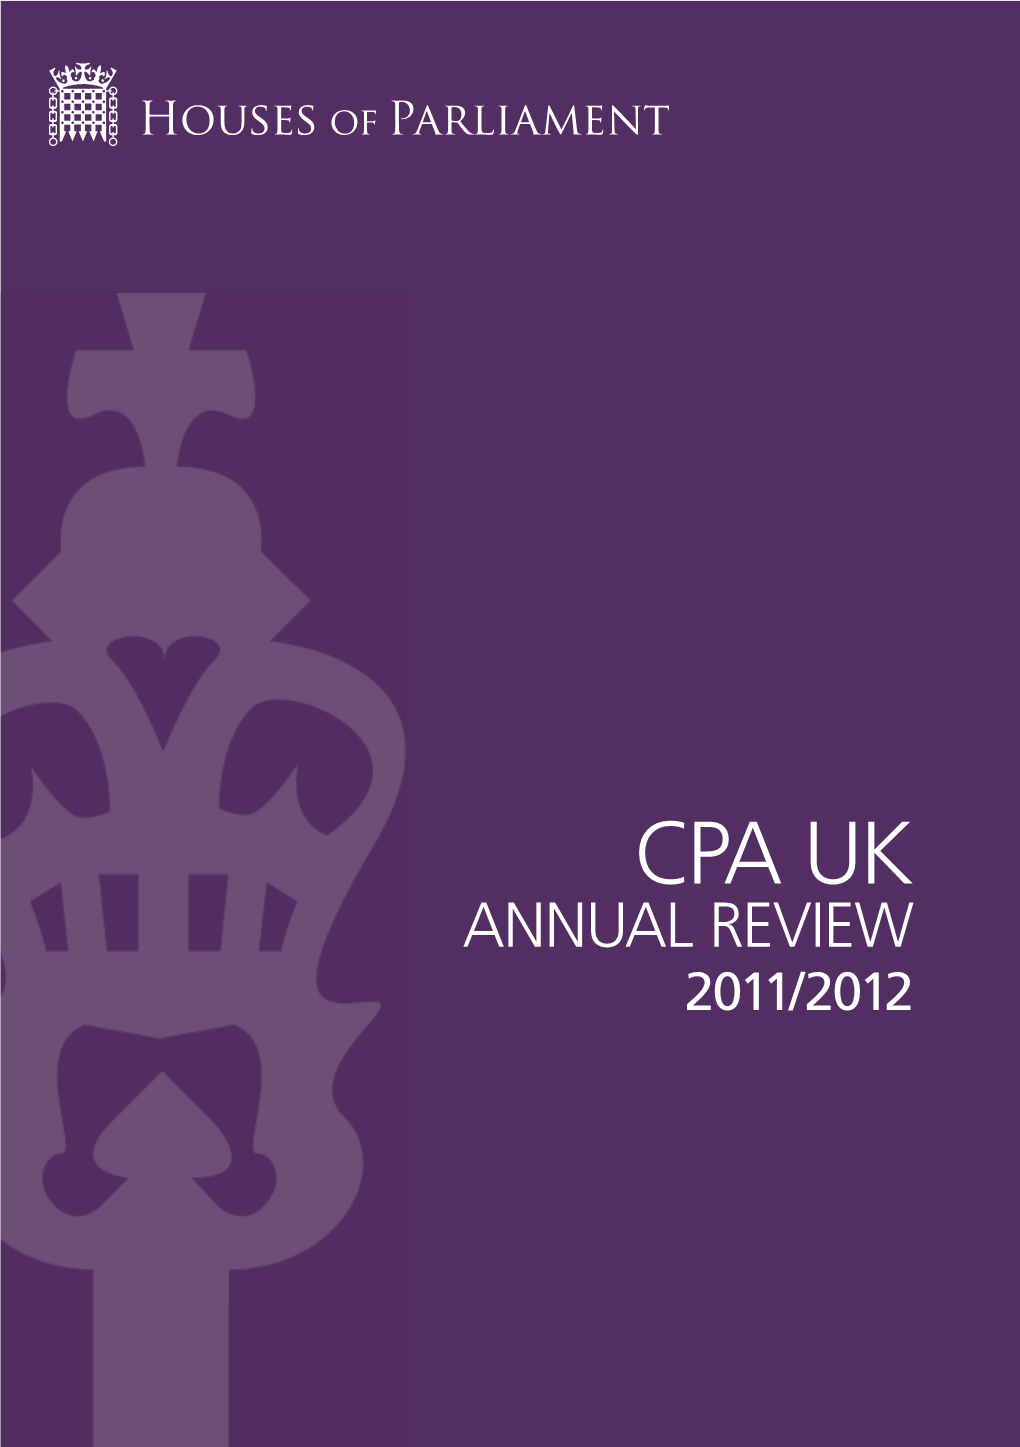 Cpa Uk Annual Review 2011/2012 Cpa Uk Annual Review 2011/2012 1